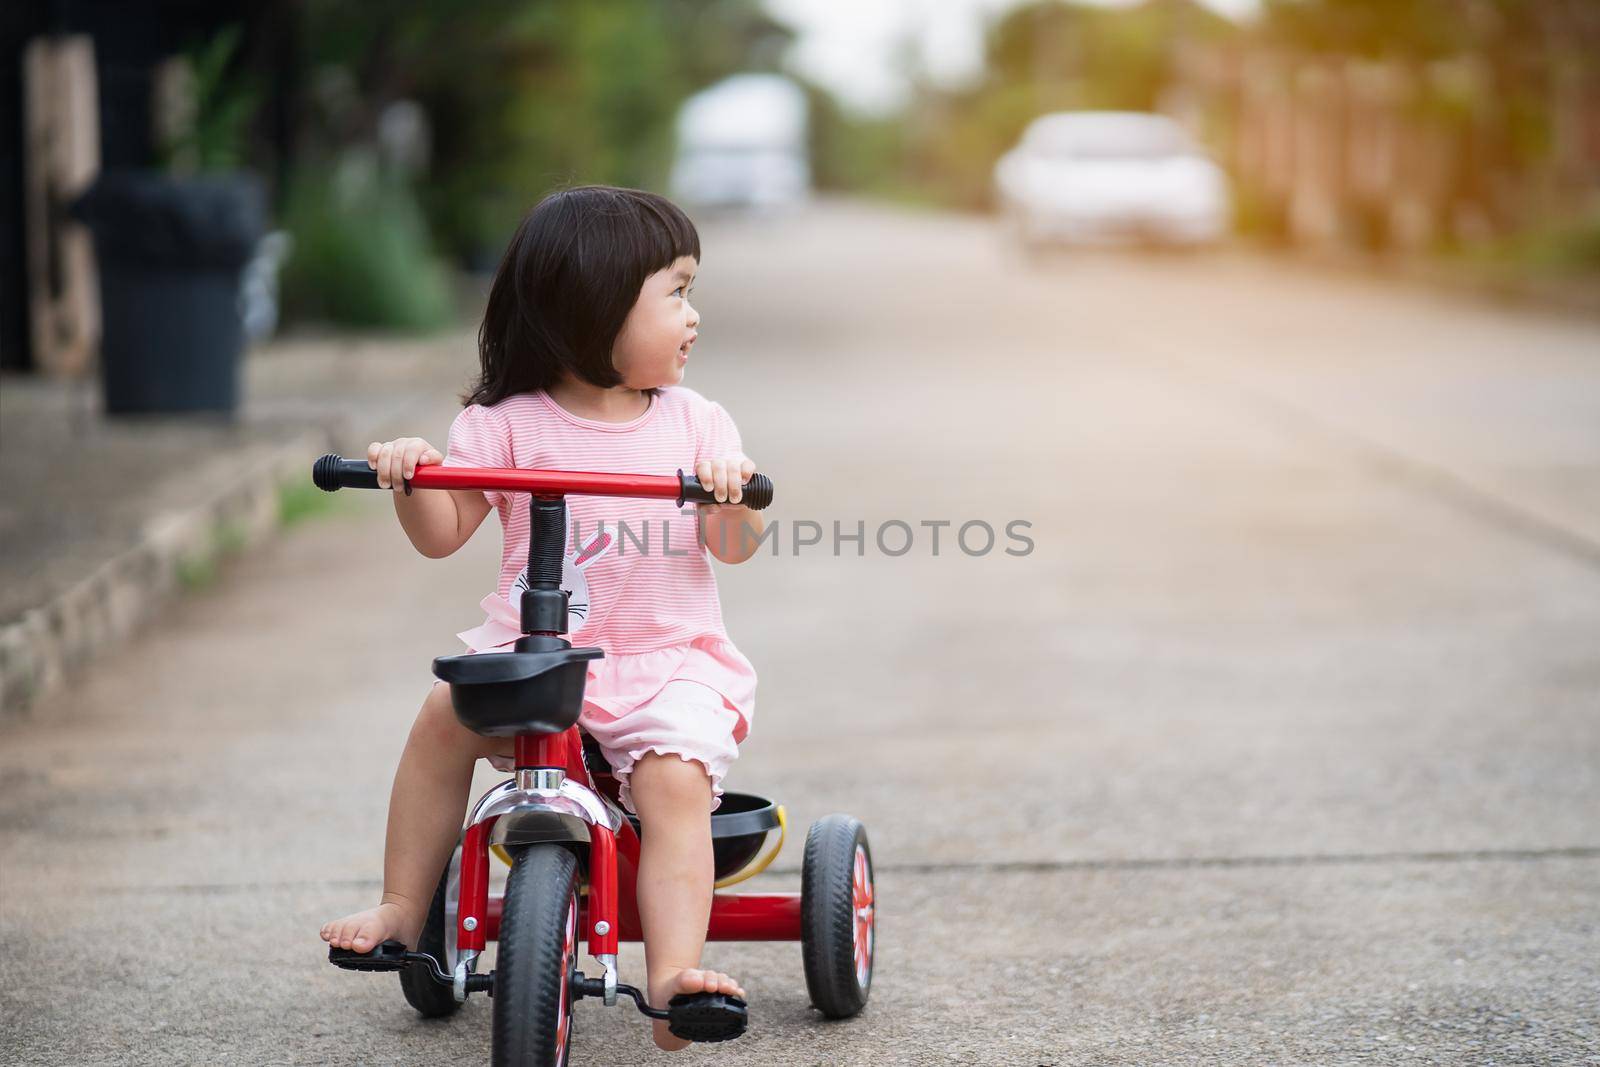 Cute children riding a bike. Kids enjoying a bicycle ride.